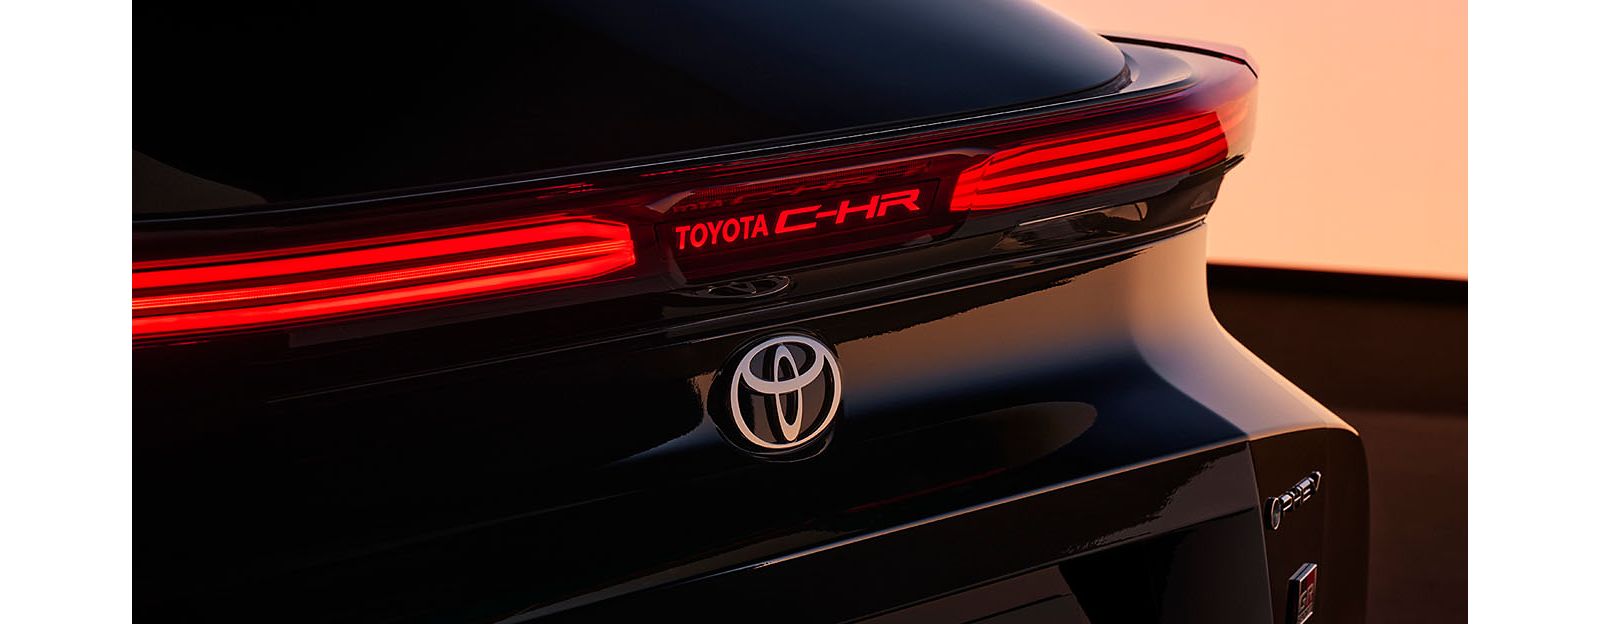 Toyota C-HR, todas las versiones y motorizaciones del mercado, con precios,  imágenes, datos técnicos y pruebas.